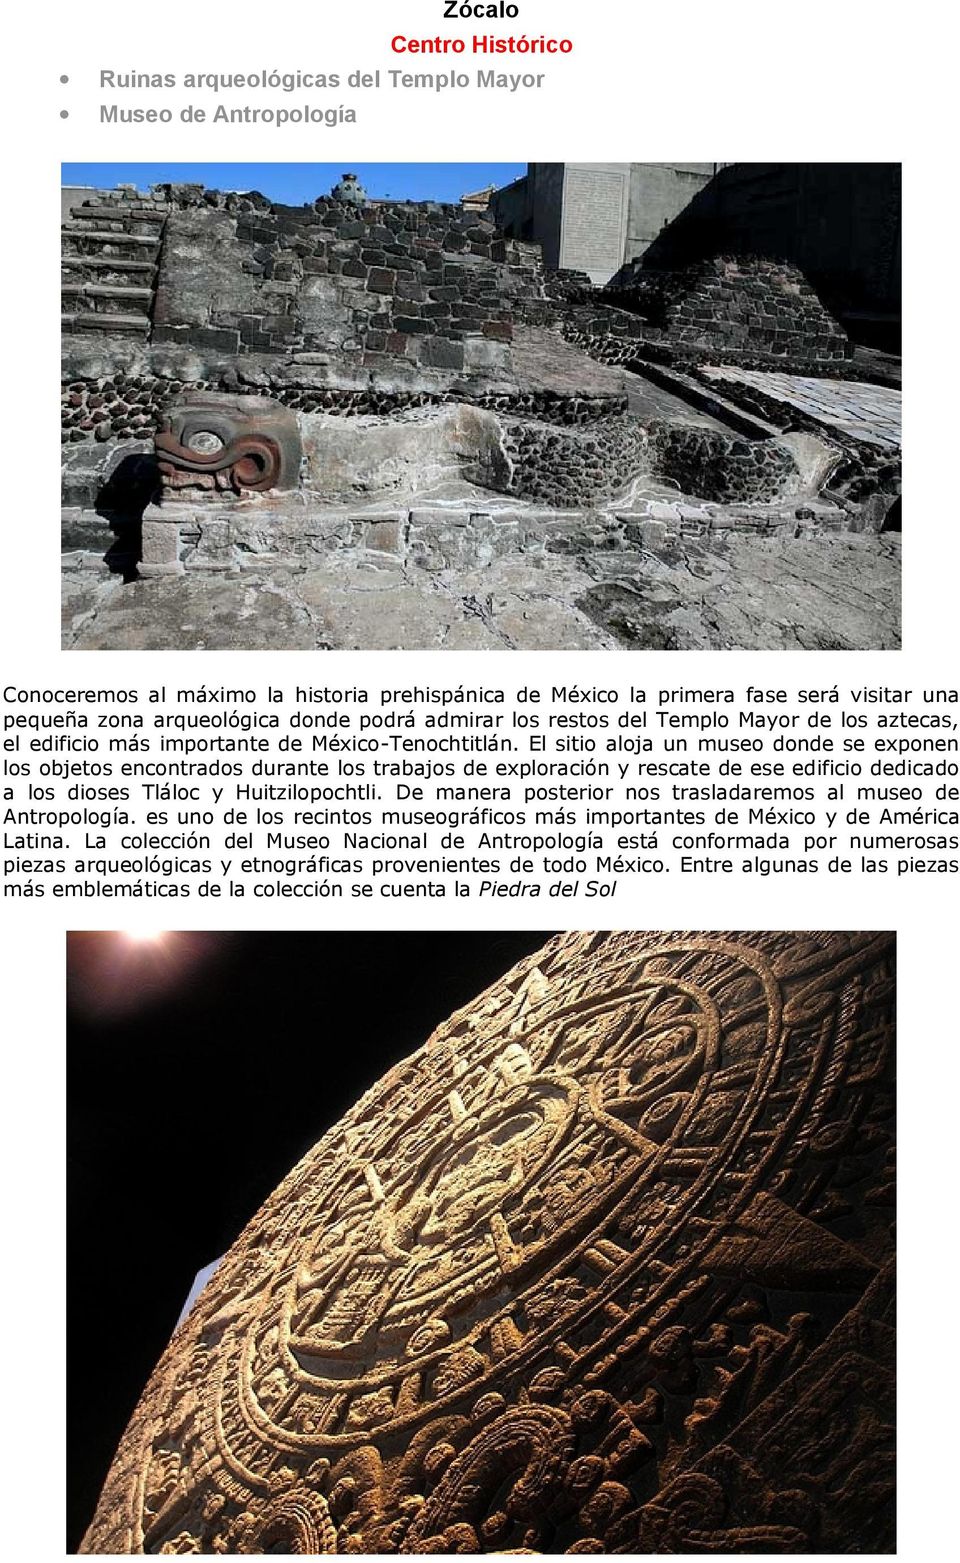 El sitio aloja un museo donde se exponen los objetos encontrados durante los trabajos de exploración y rescate de ese edificio dedicado a los dioses Tláloc y Huitzilopochtli.